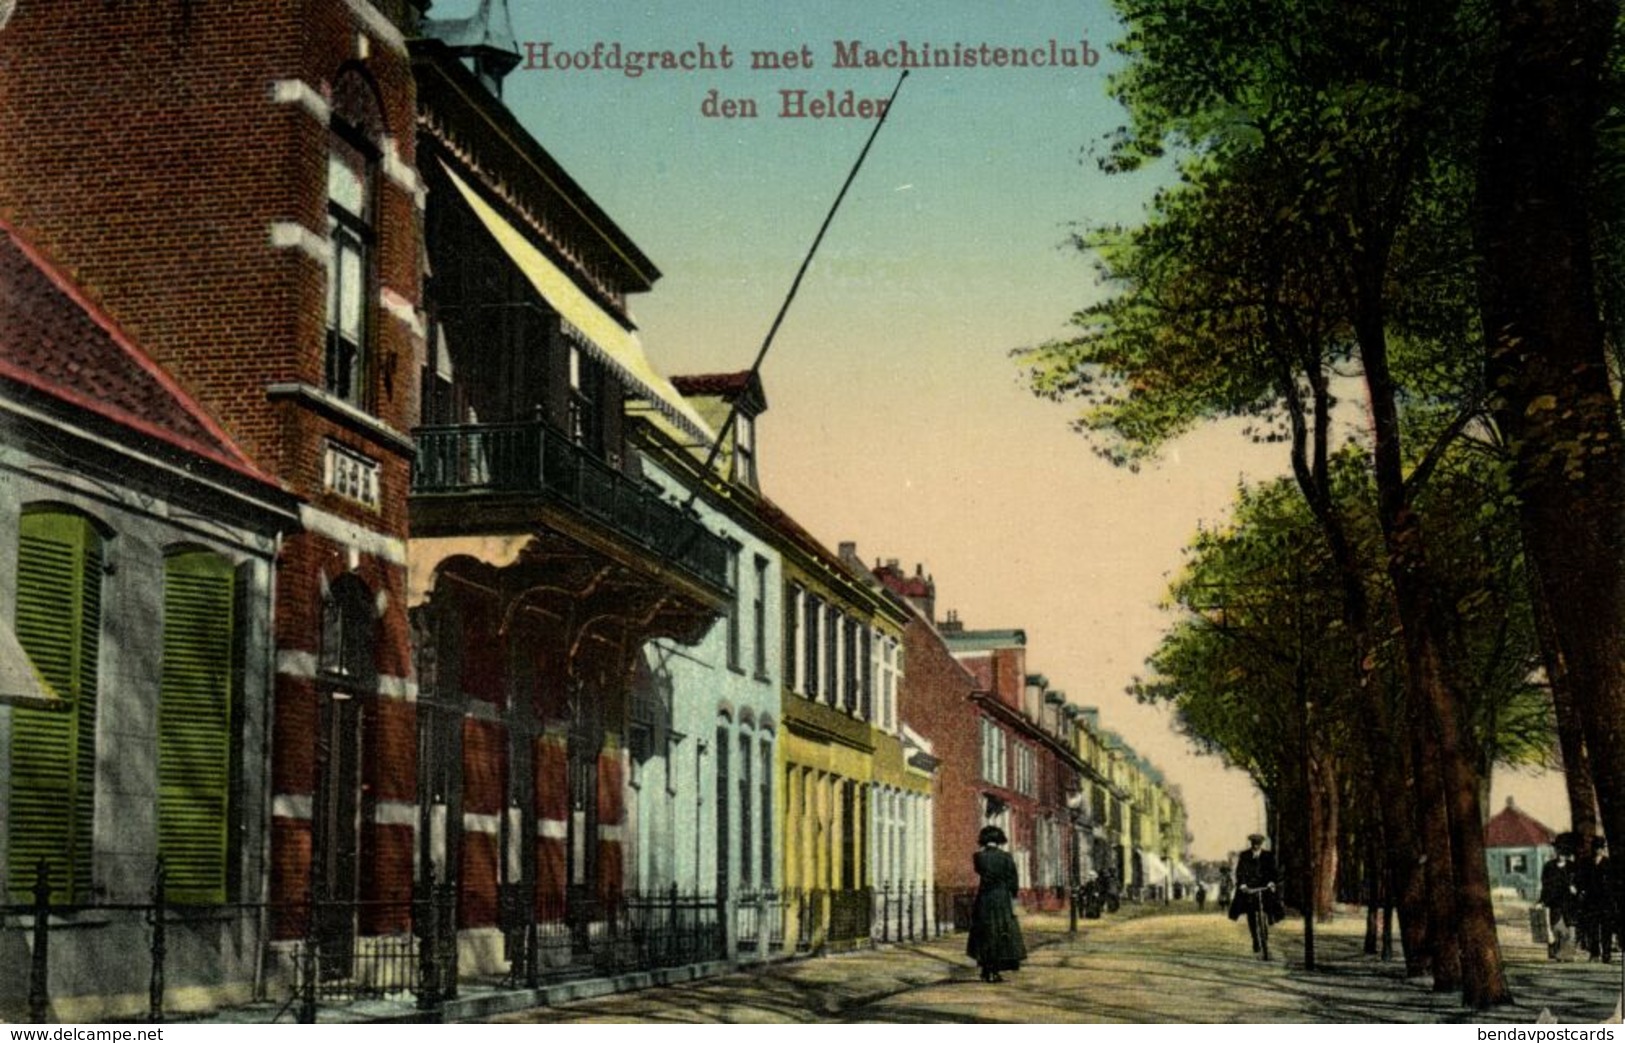 Nederland, DEN HELDER, Hoofdgracht Met Machinistenclub (1913) Ansichtkaart - Den Helder